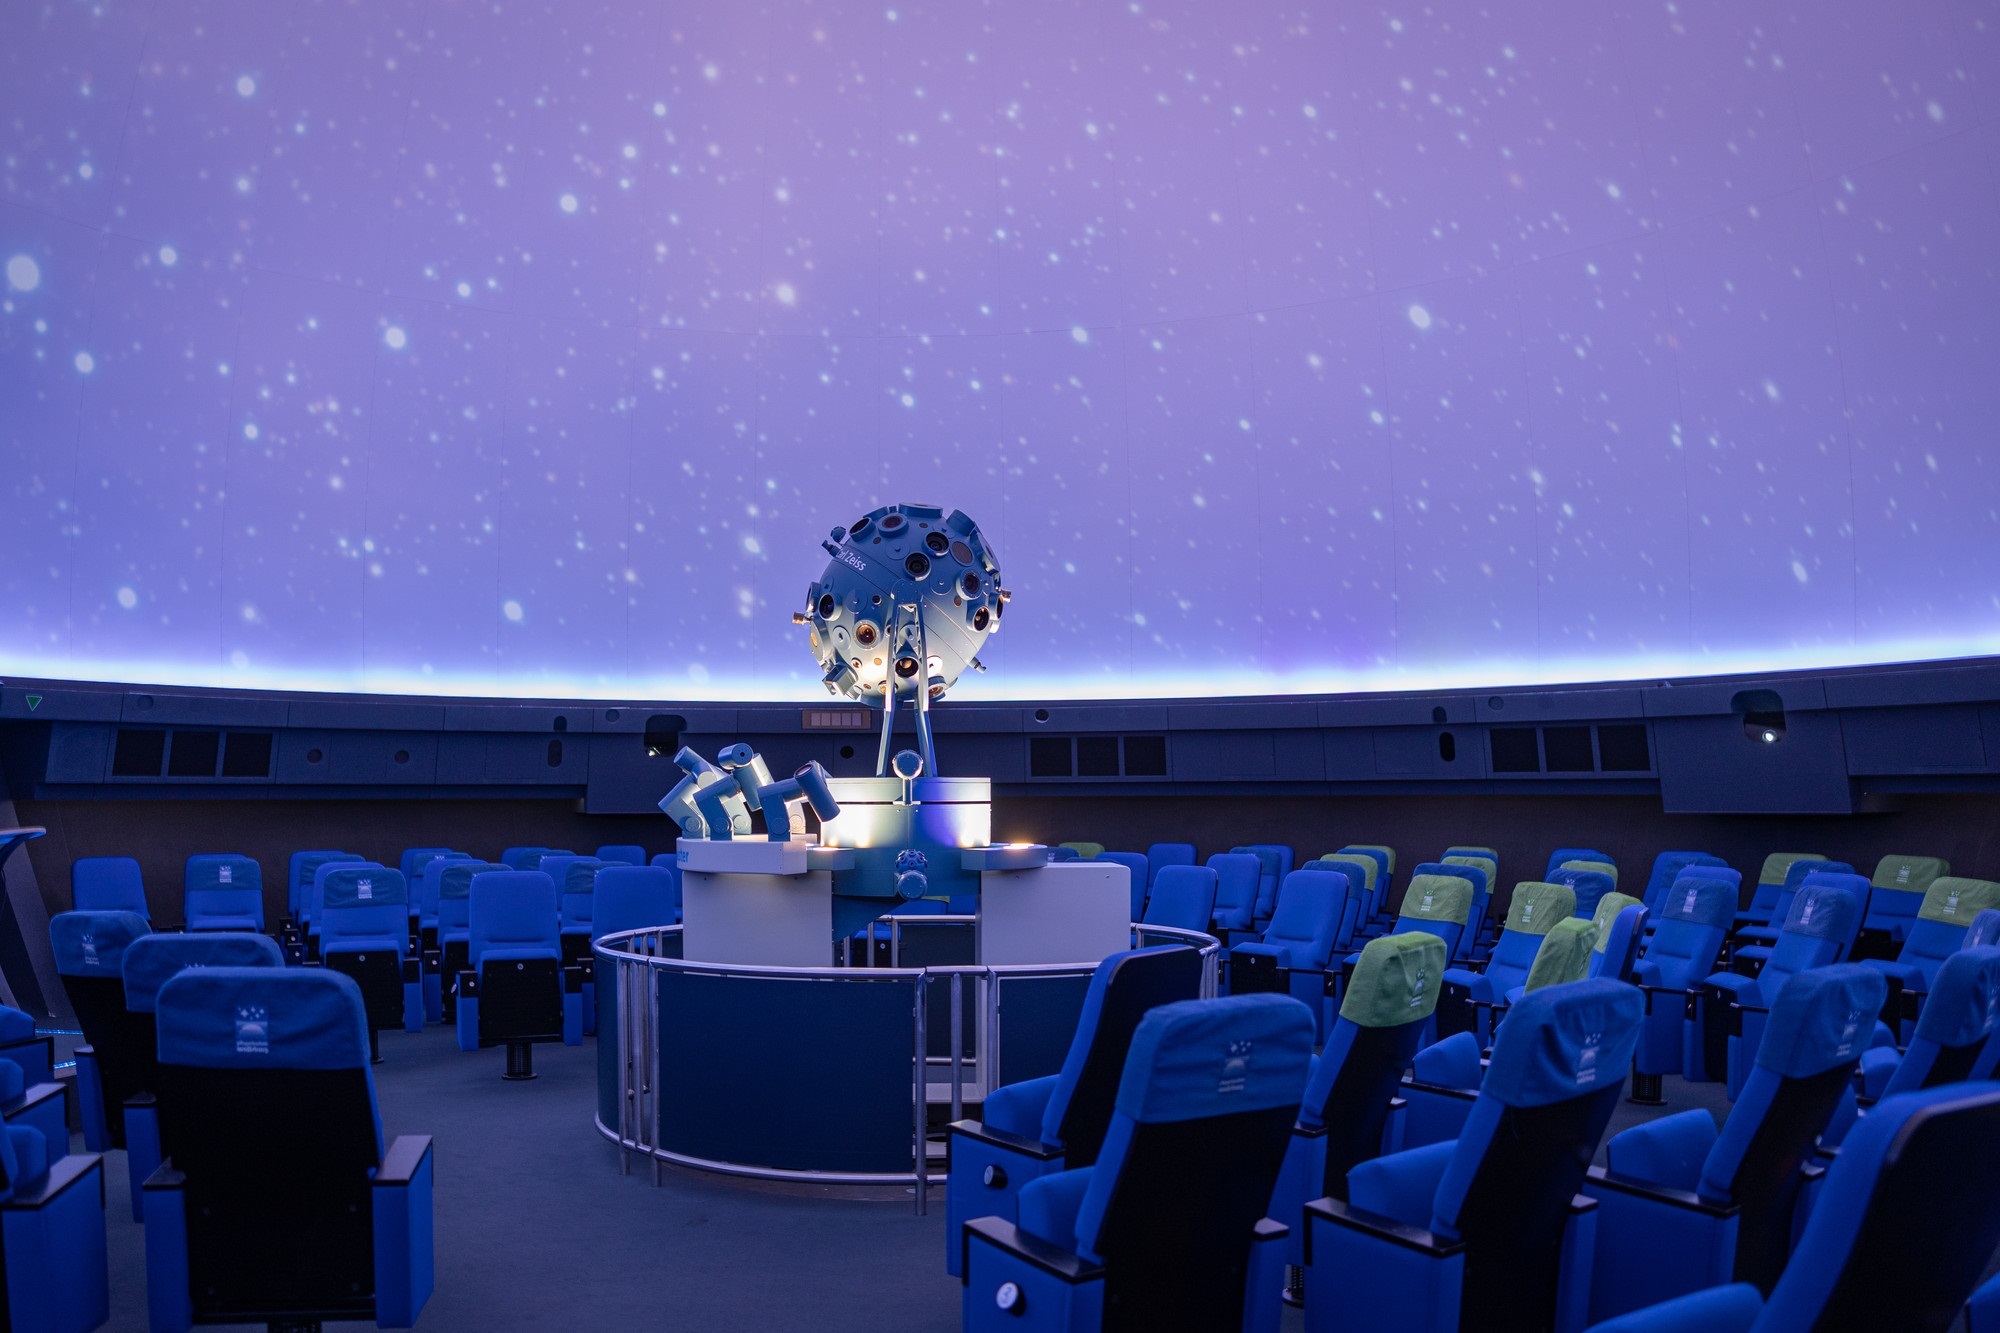 Sternenhimmel in der Sternenkuppel des Planetarium Wolfsburg